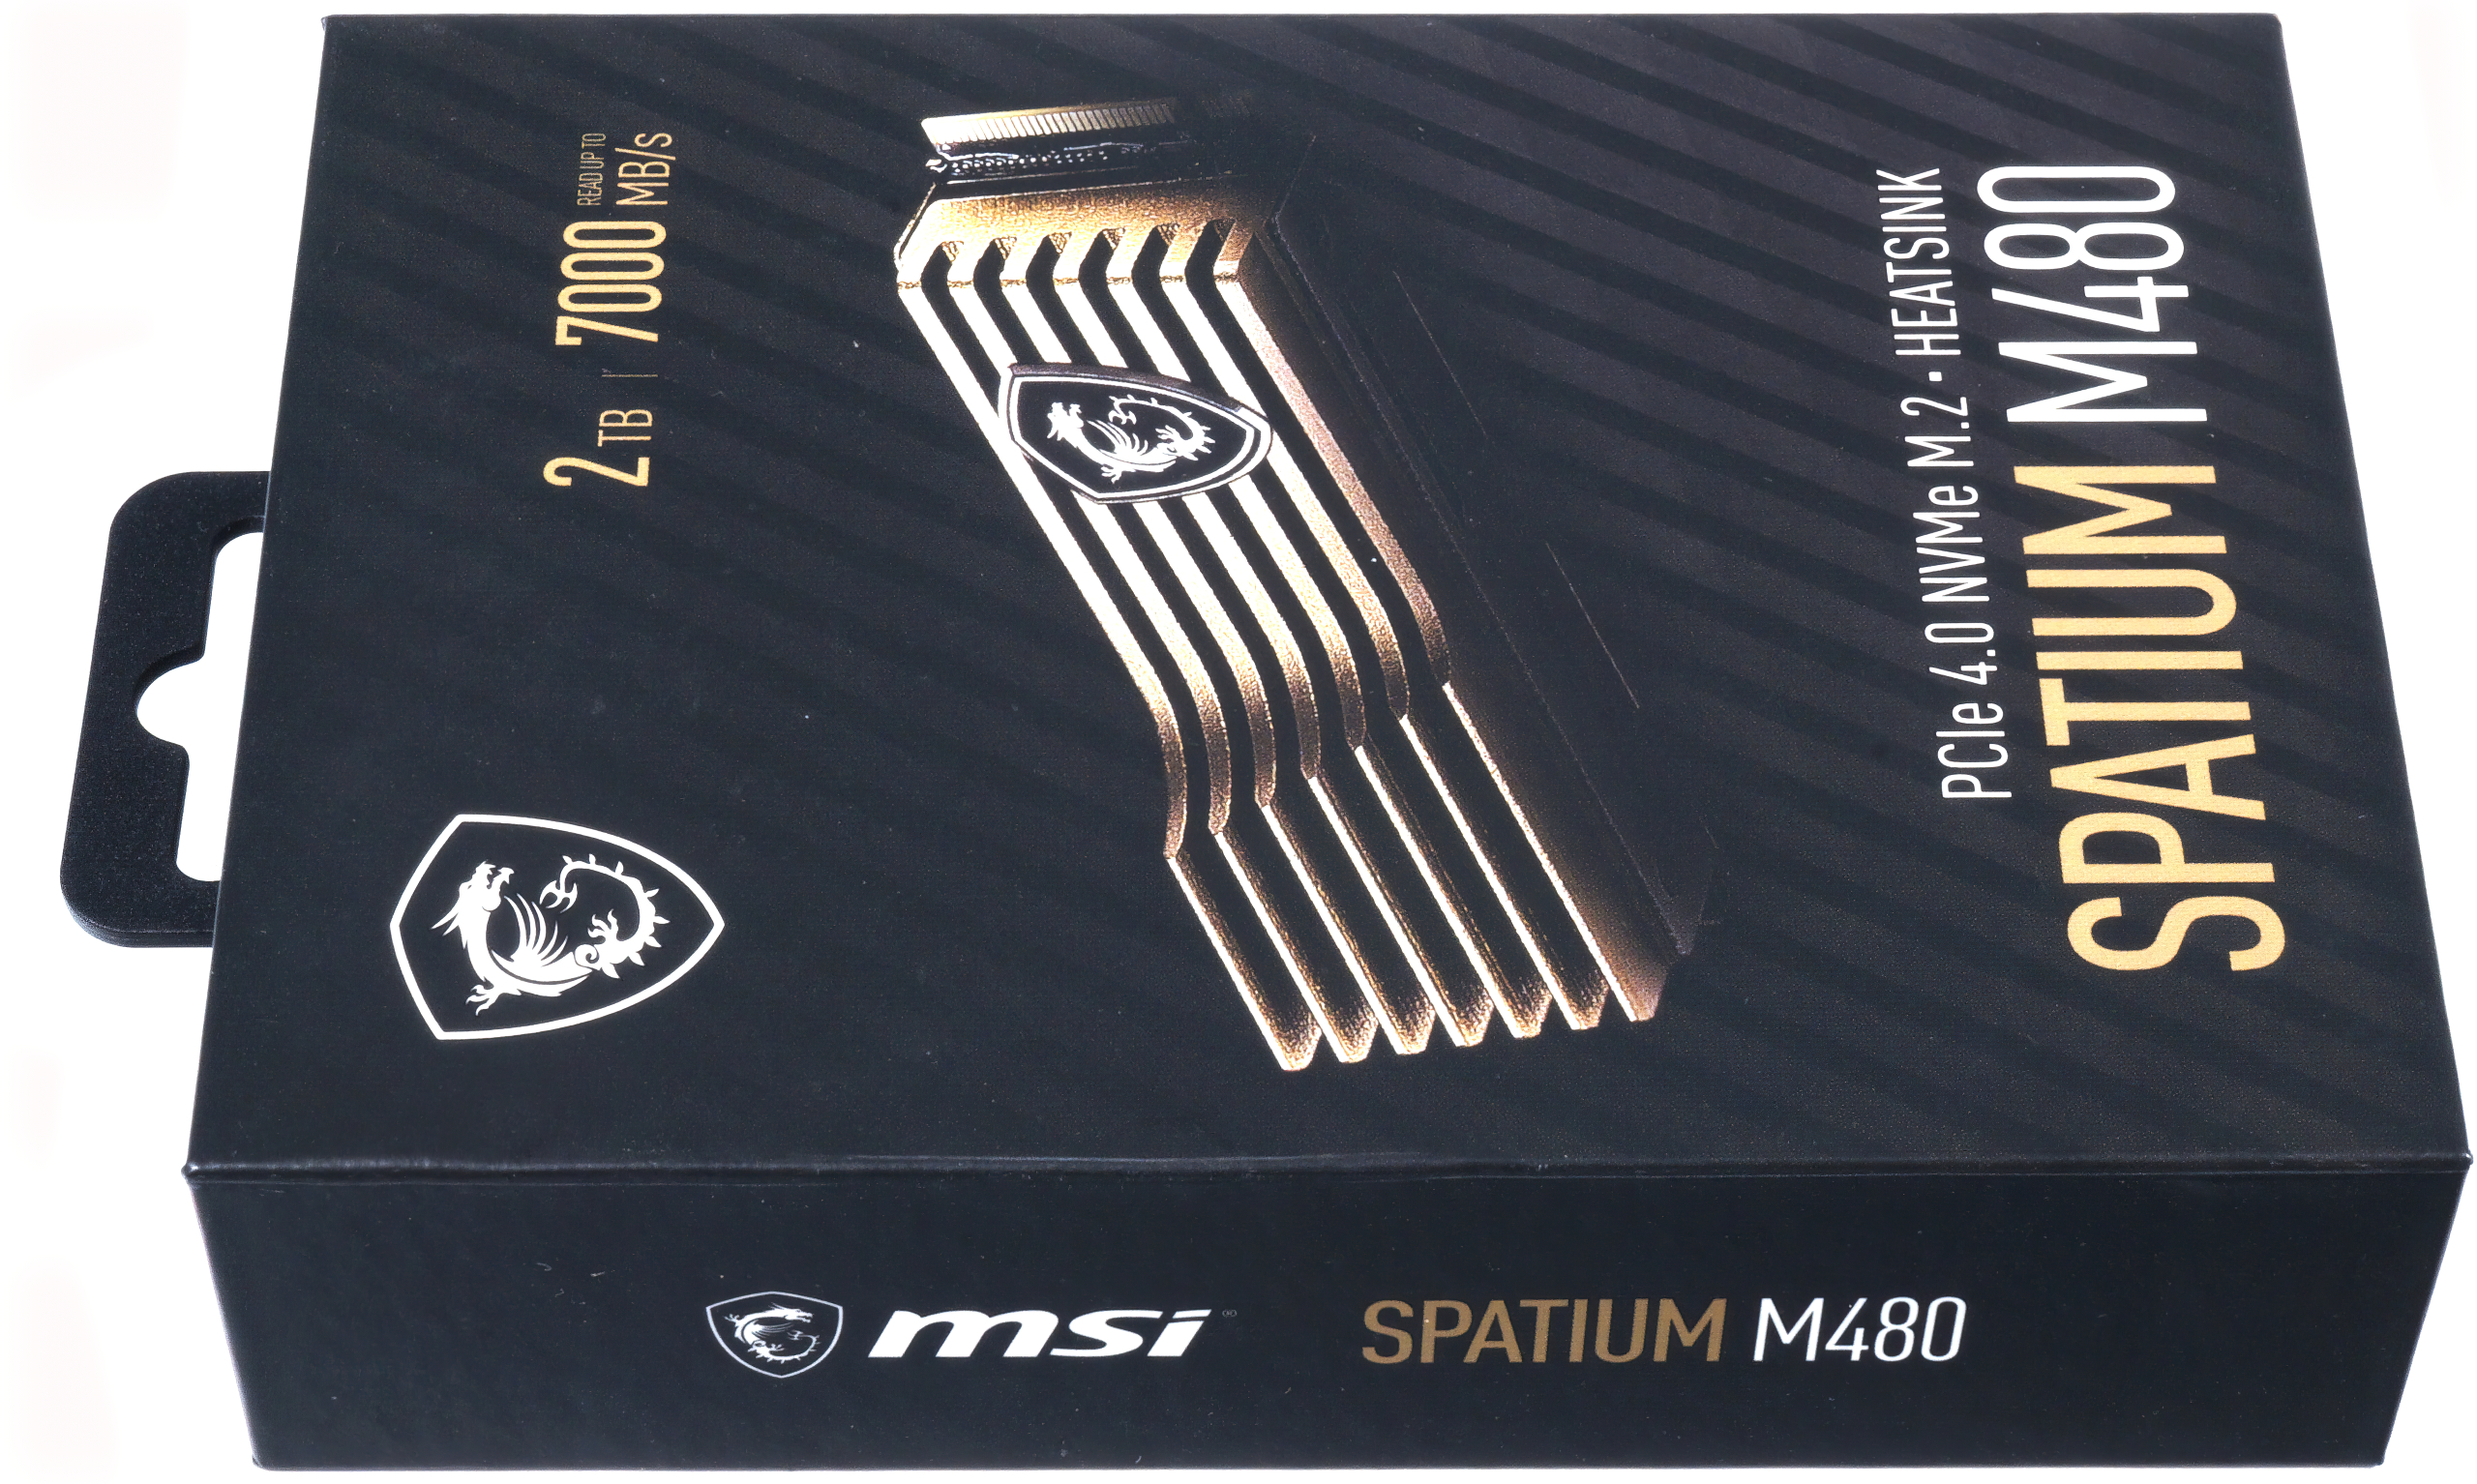 SPATIUM M480 PCIe 4.0 NVMe M.2